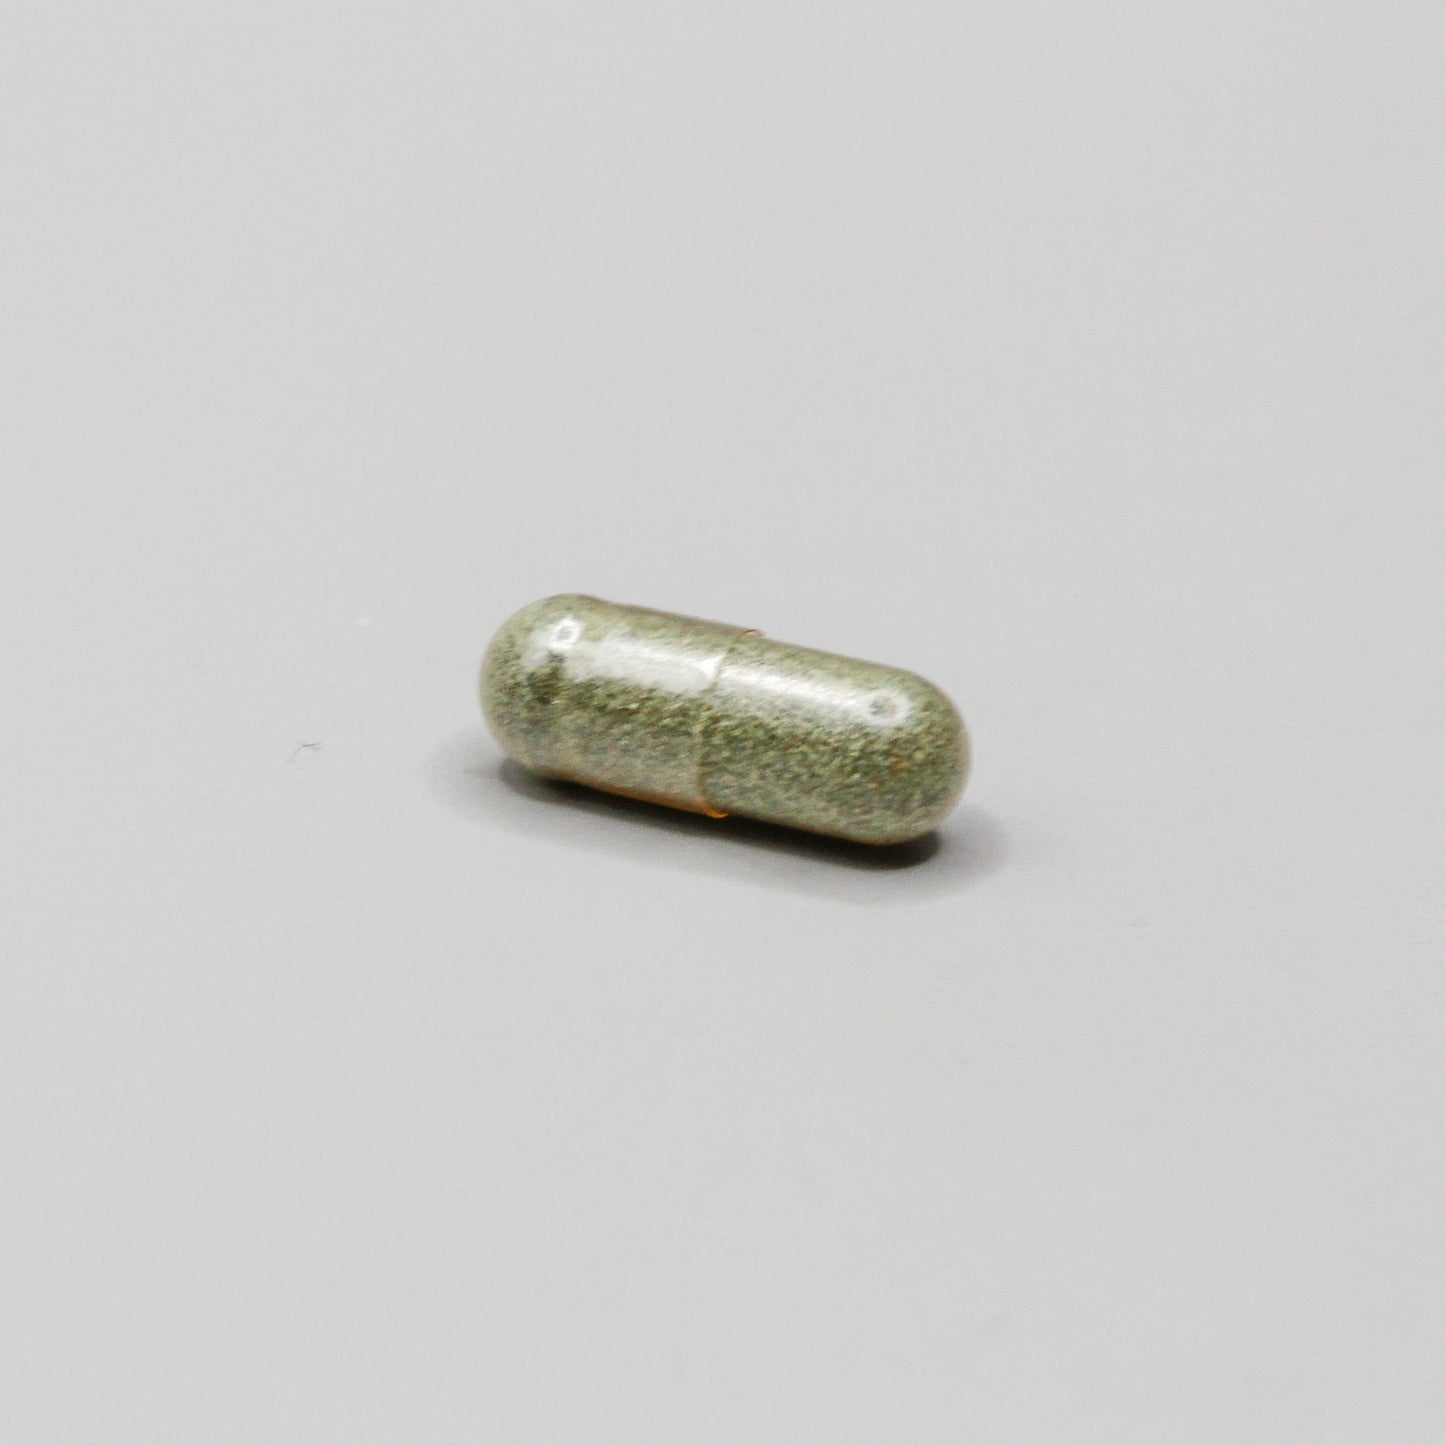 A green pill